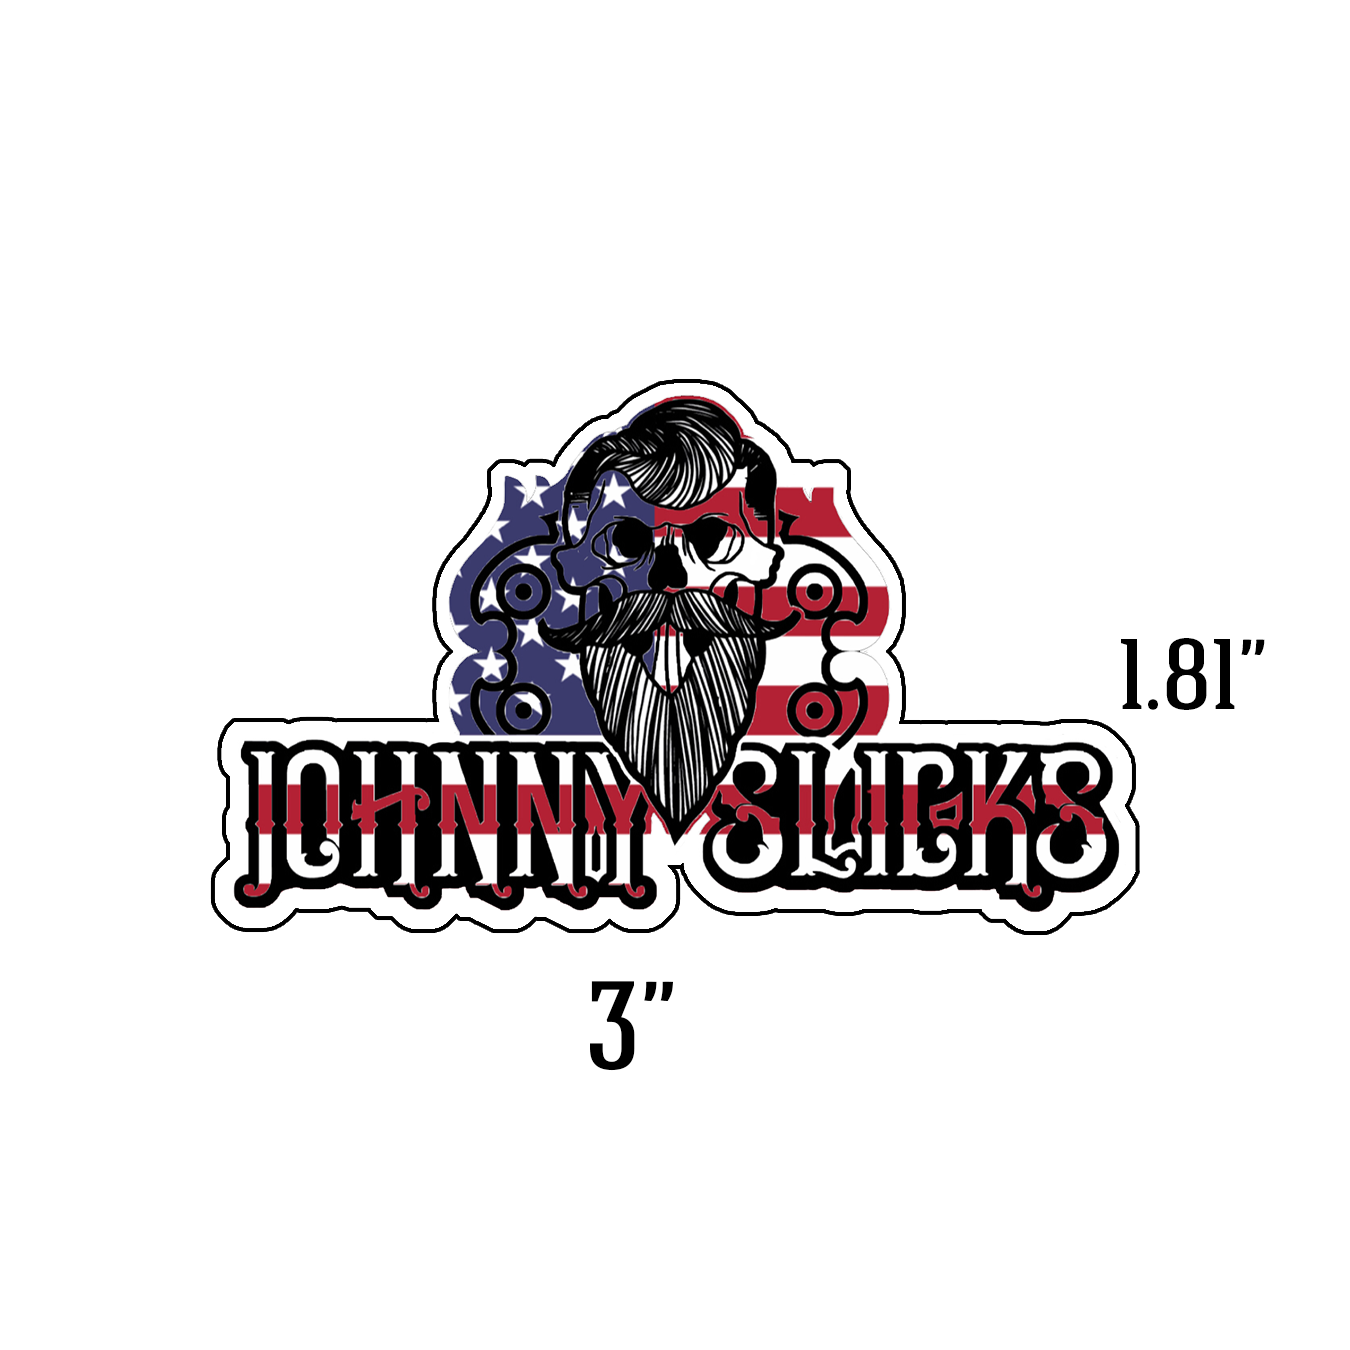 USA Slicker – Johnny Slicks